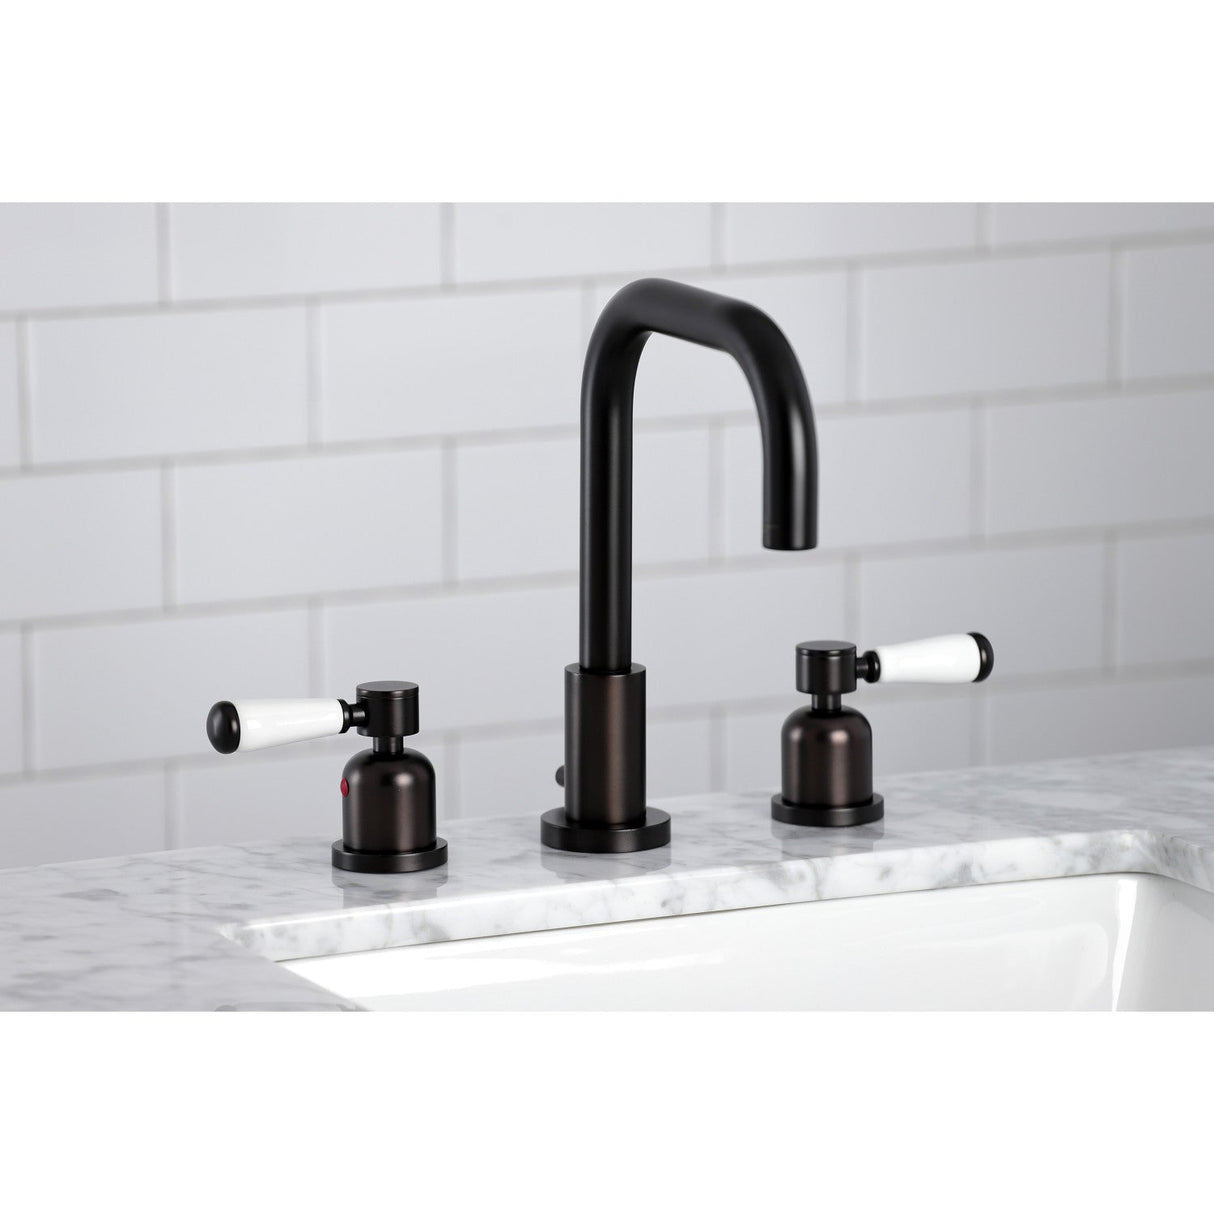 Paris FSC8935DPL Two-Handle 3-Hole Deck Mount Widespread Bathroom Faucet with Pop-Up Drain, Oil Rubbed Bronze